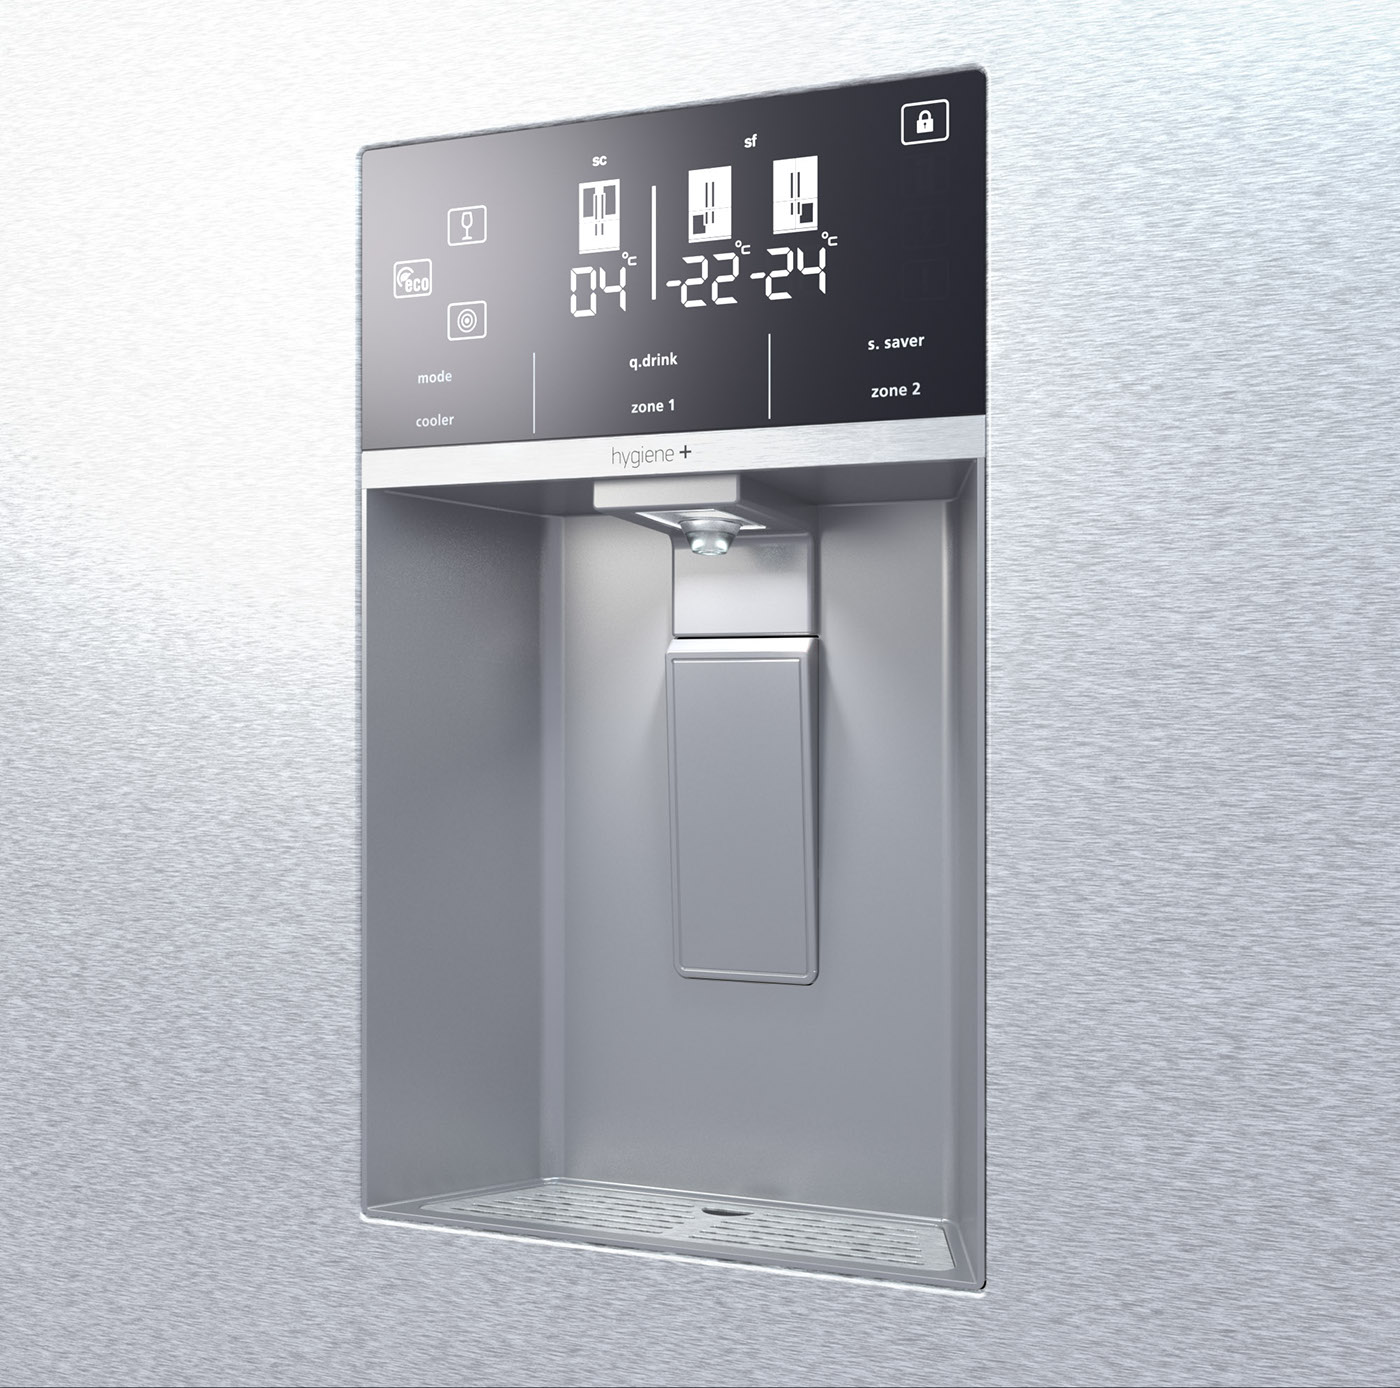 water dispenser refrigerator French Door dispenser water